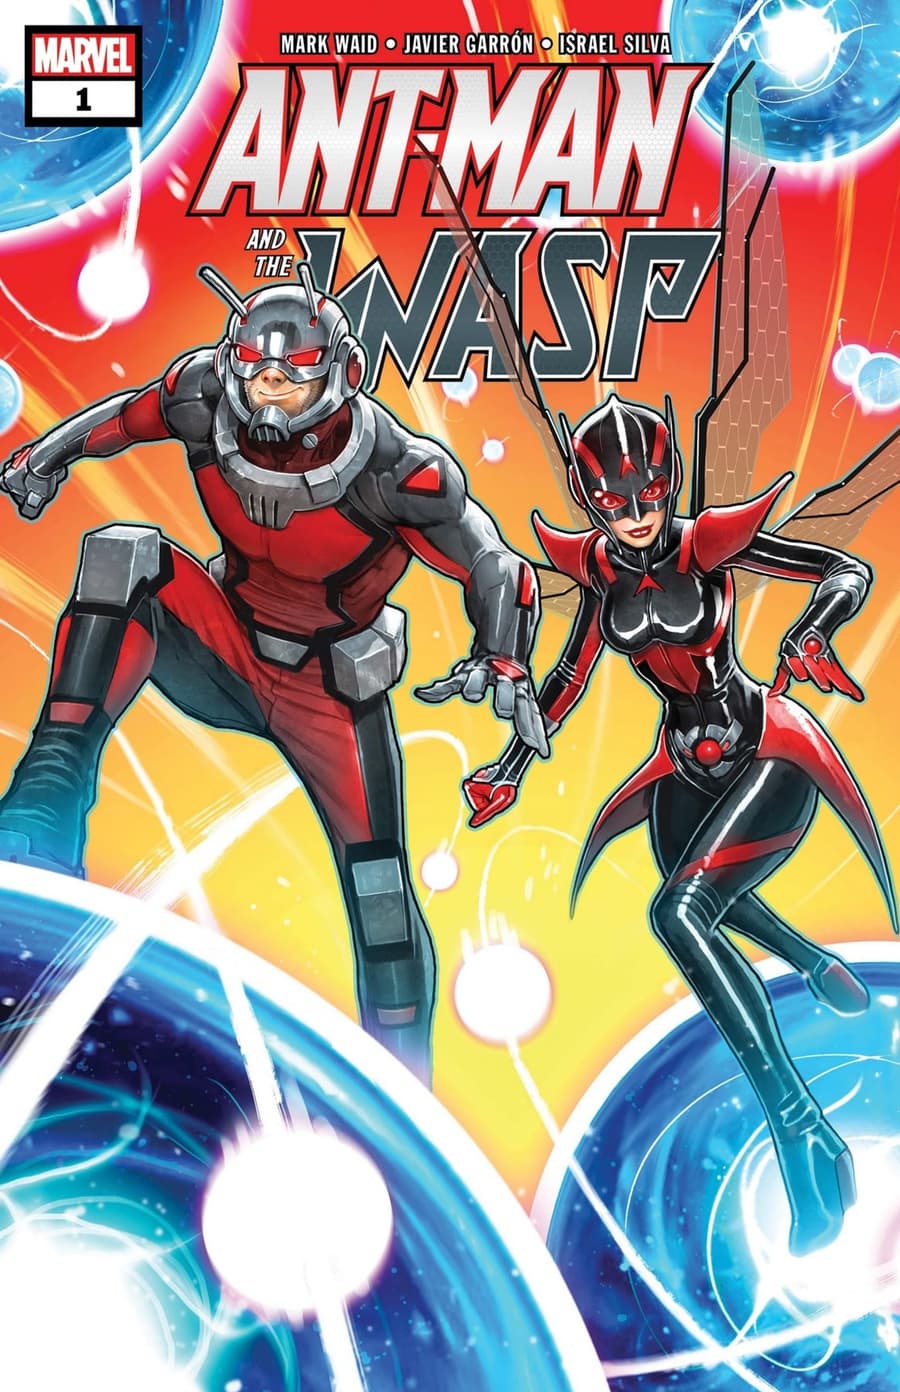 ANT-MAN AND THE WASP (2018) #1 cover by David Nakayama